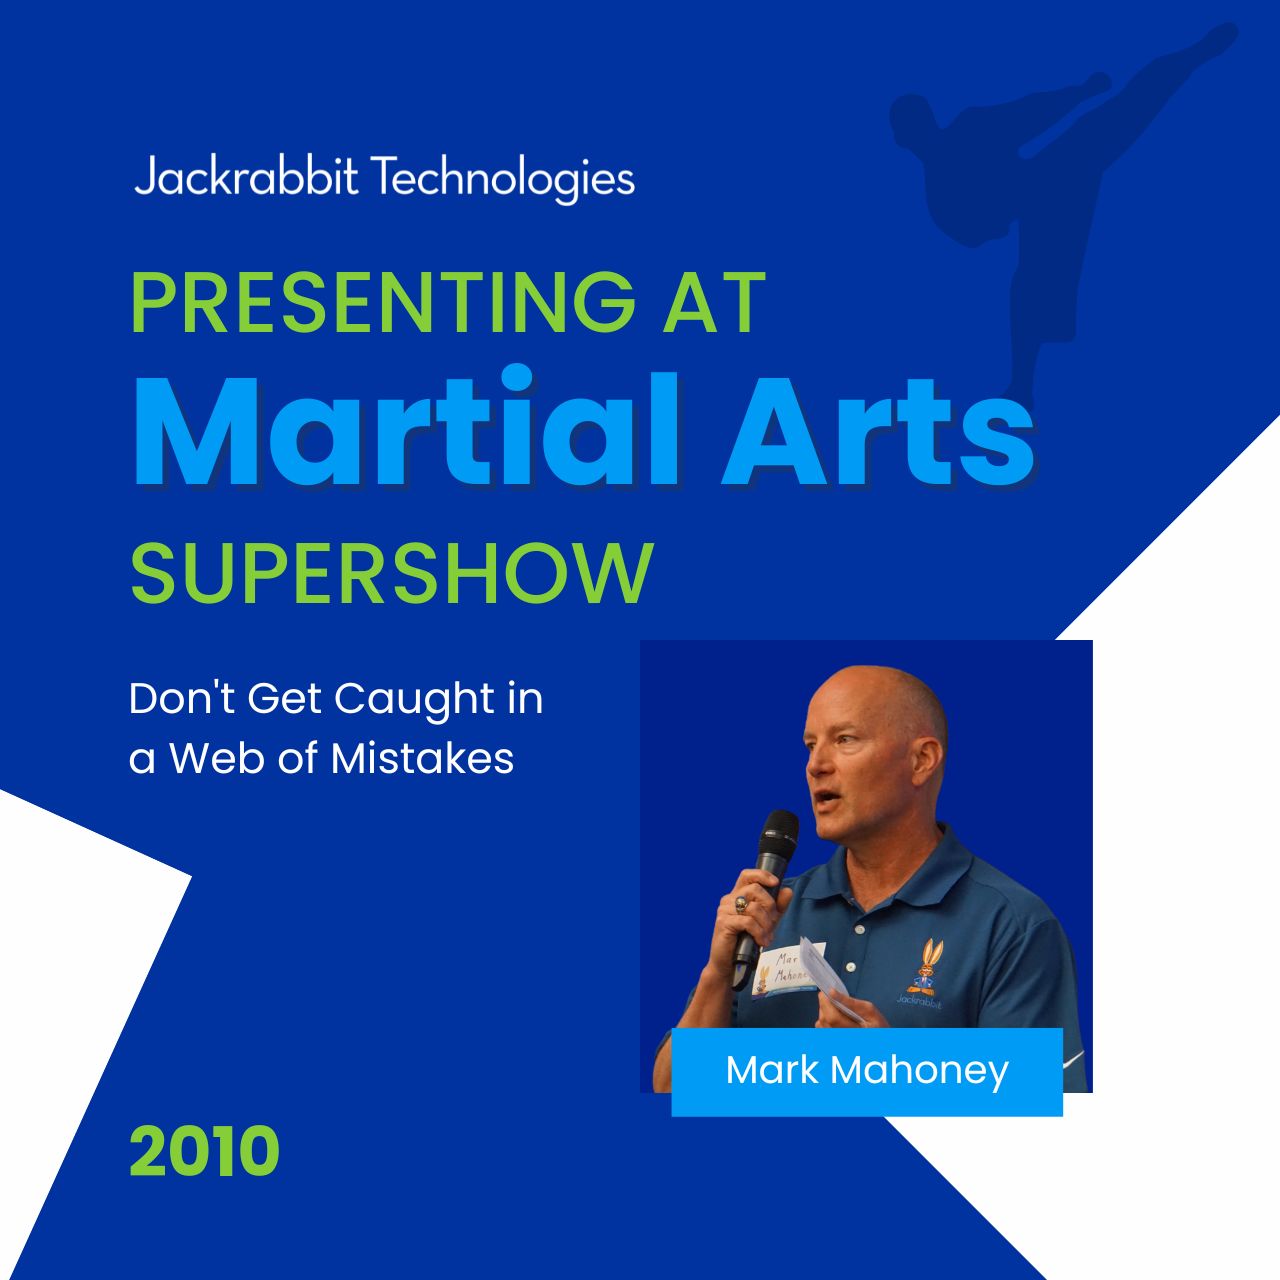 jackrabbit martial arts supershow